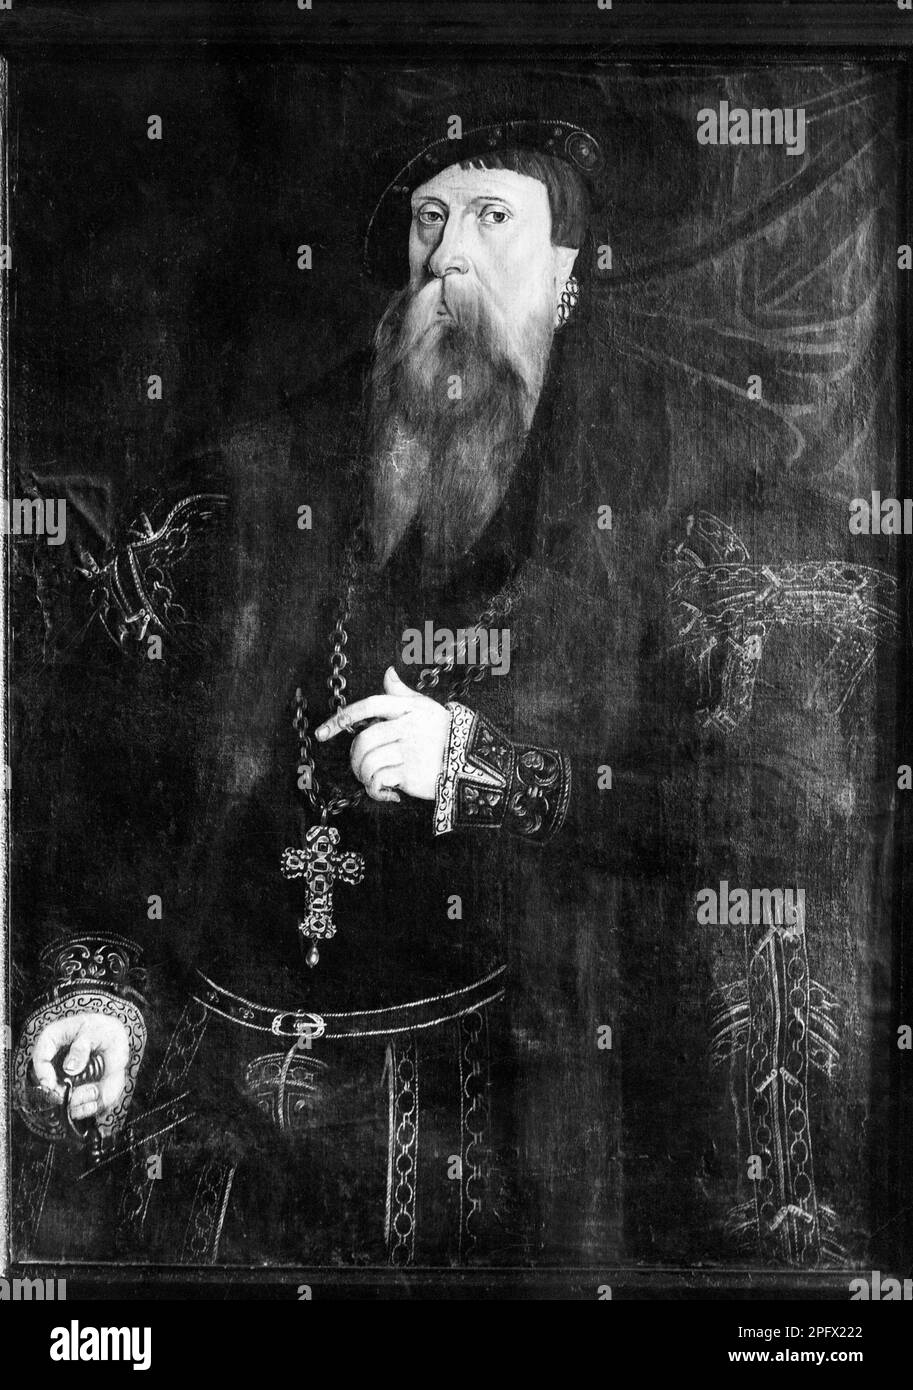 Gustav Vasa, Gustav Eriksson. 12. Mai 1496 bis 29. september 1560. König Gustav I. von Schweden aus der Vasa-Adelsfamilie. schwarzweißfoto eines Gemäldes eines unbekannten Künstlers. Stockfoto